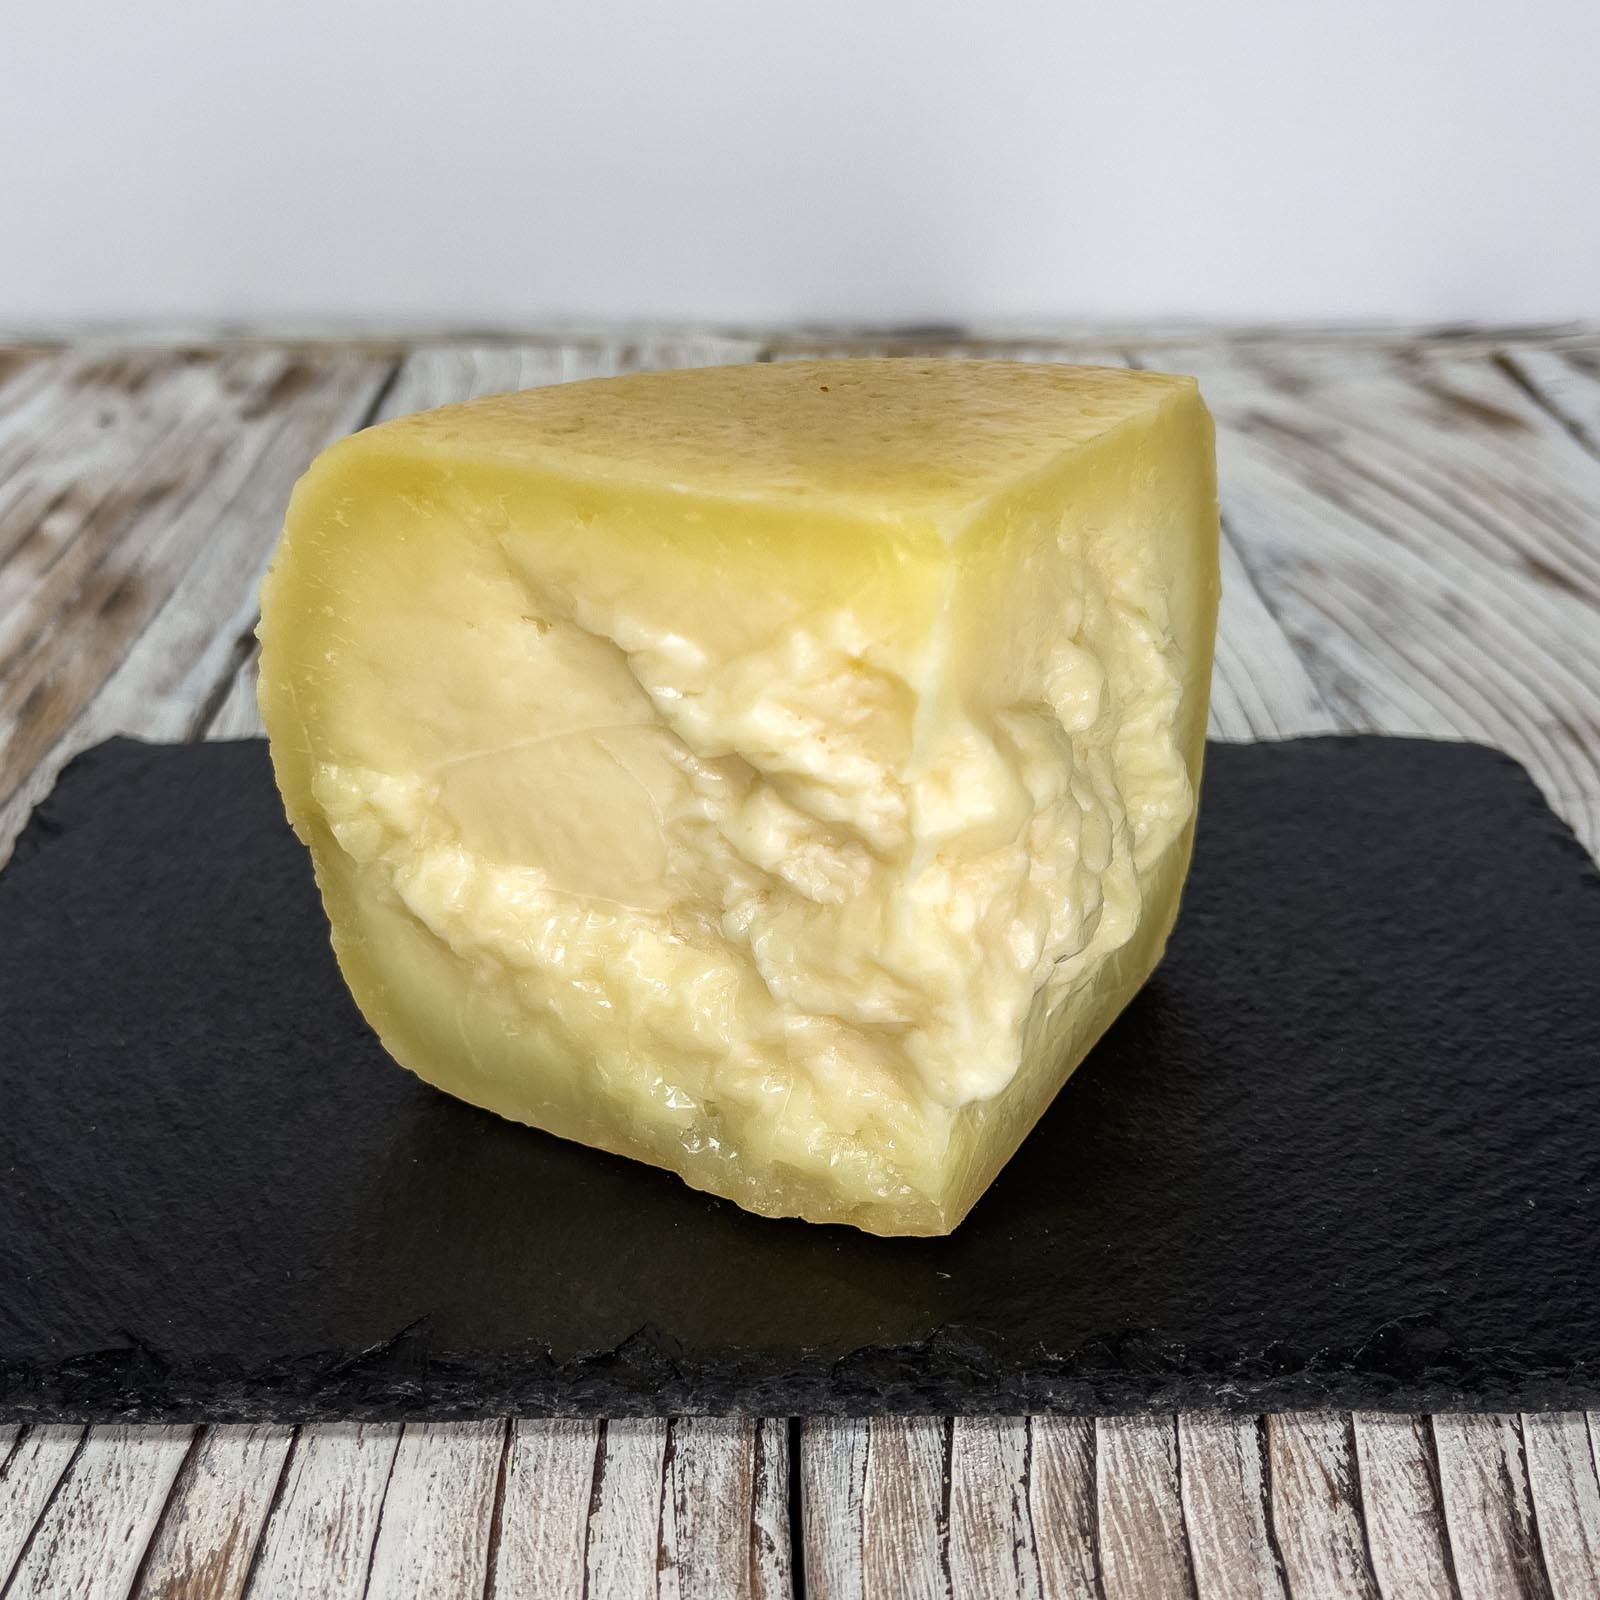 „Crosta D'Oro” Gereifter Pecorino-Käse ist ein typisches Produkt der toskanischen Handwerksküche, das sich durch eine dicke goldene Kruste und ein intensives und einhüllendes Aroma auszeichnet. Mindestens 150 Tage bis maximal 10 Monate gereift, erhält er einen kräftigen und leicht würzigen Geschmack. Die Paste ist kompakt und leicht löslich, wodurch sie perfekt zum Würzen oder Begleiten von ersten und zweiten Gängen geeignet ist.